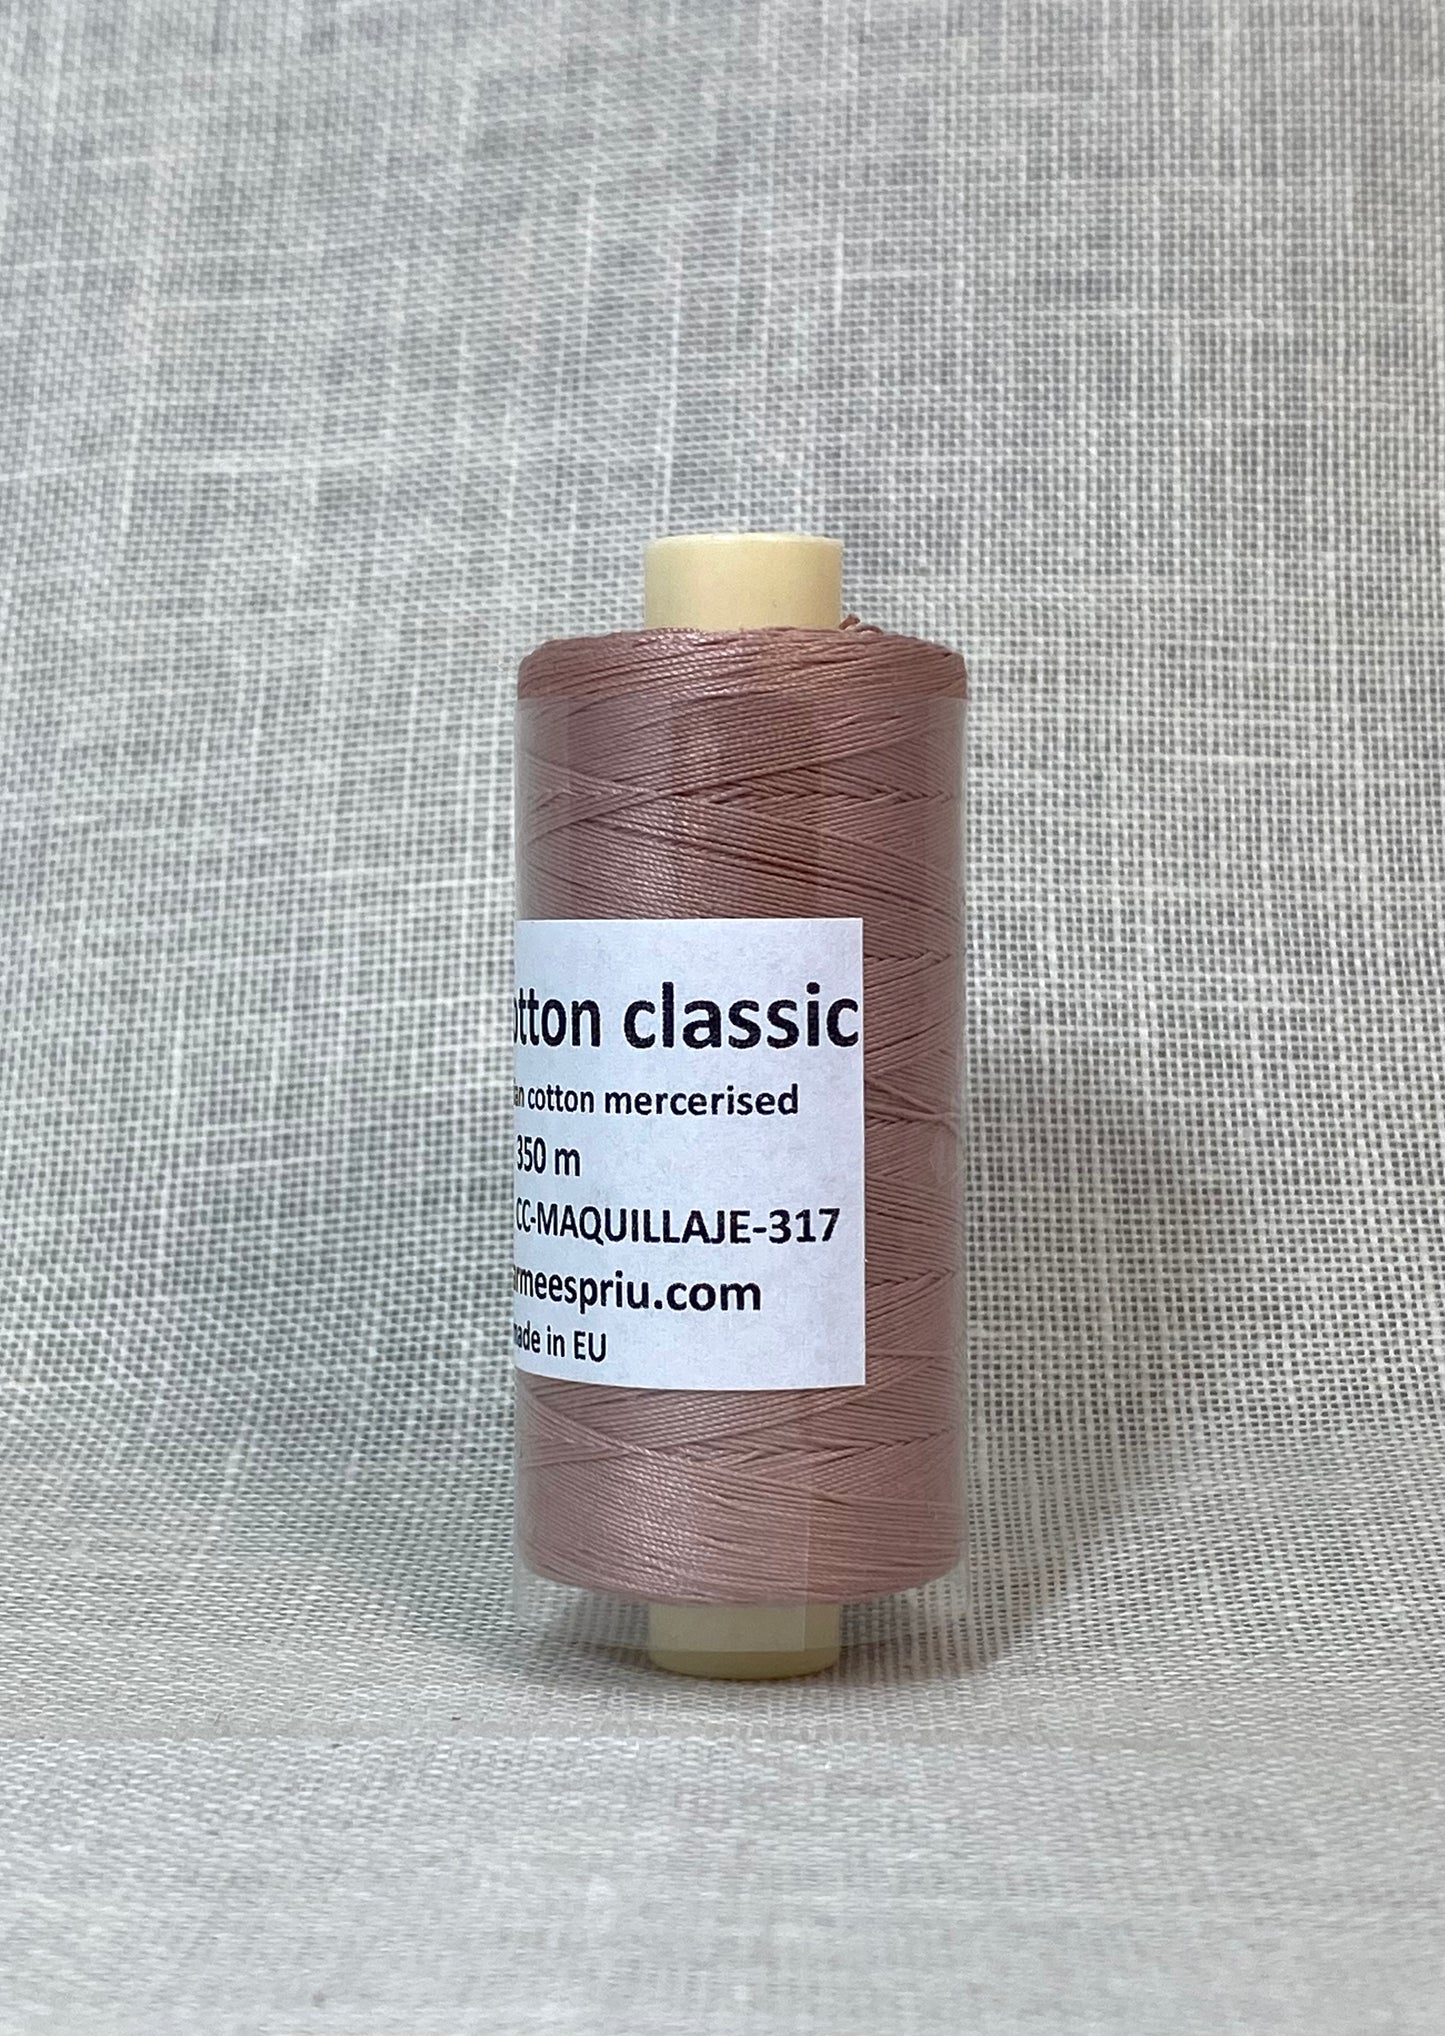 Basic cotton classic nº 317